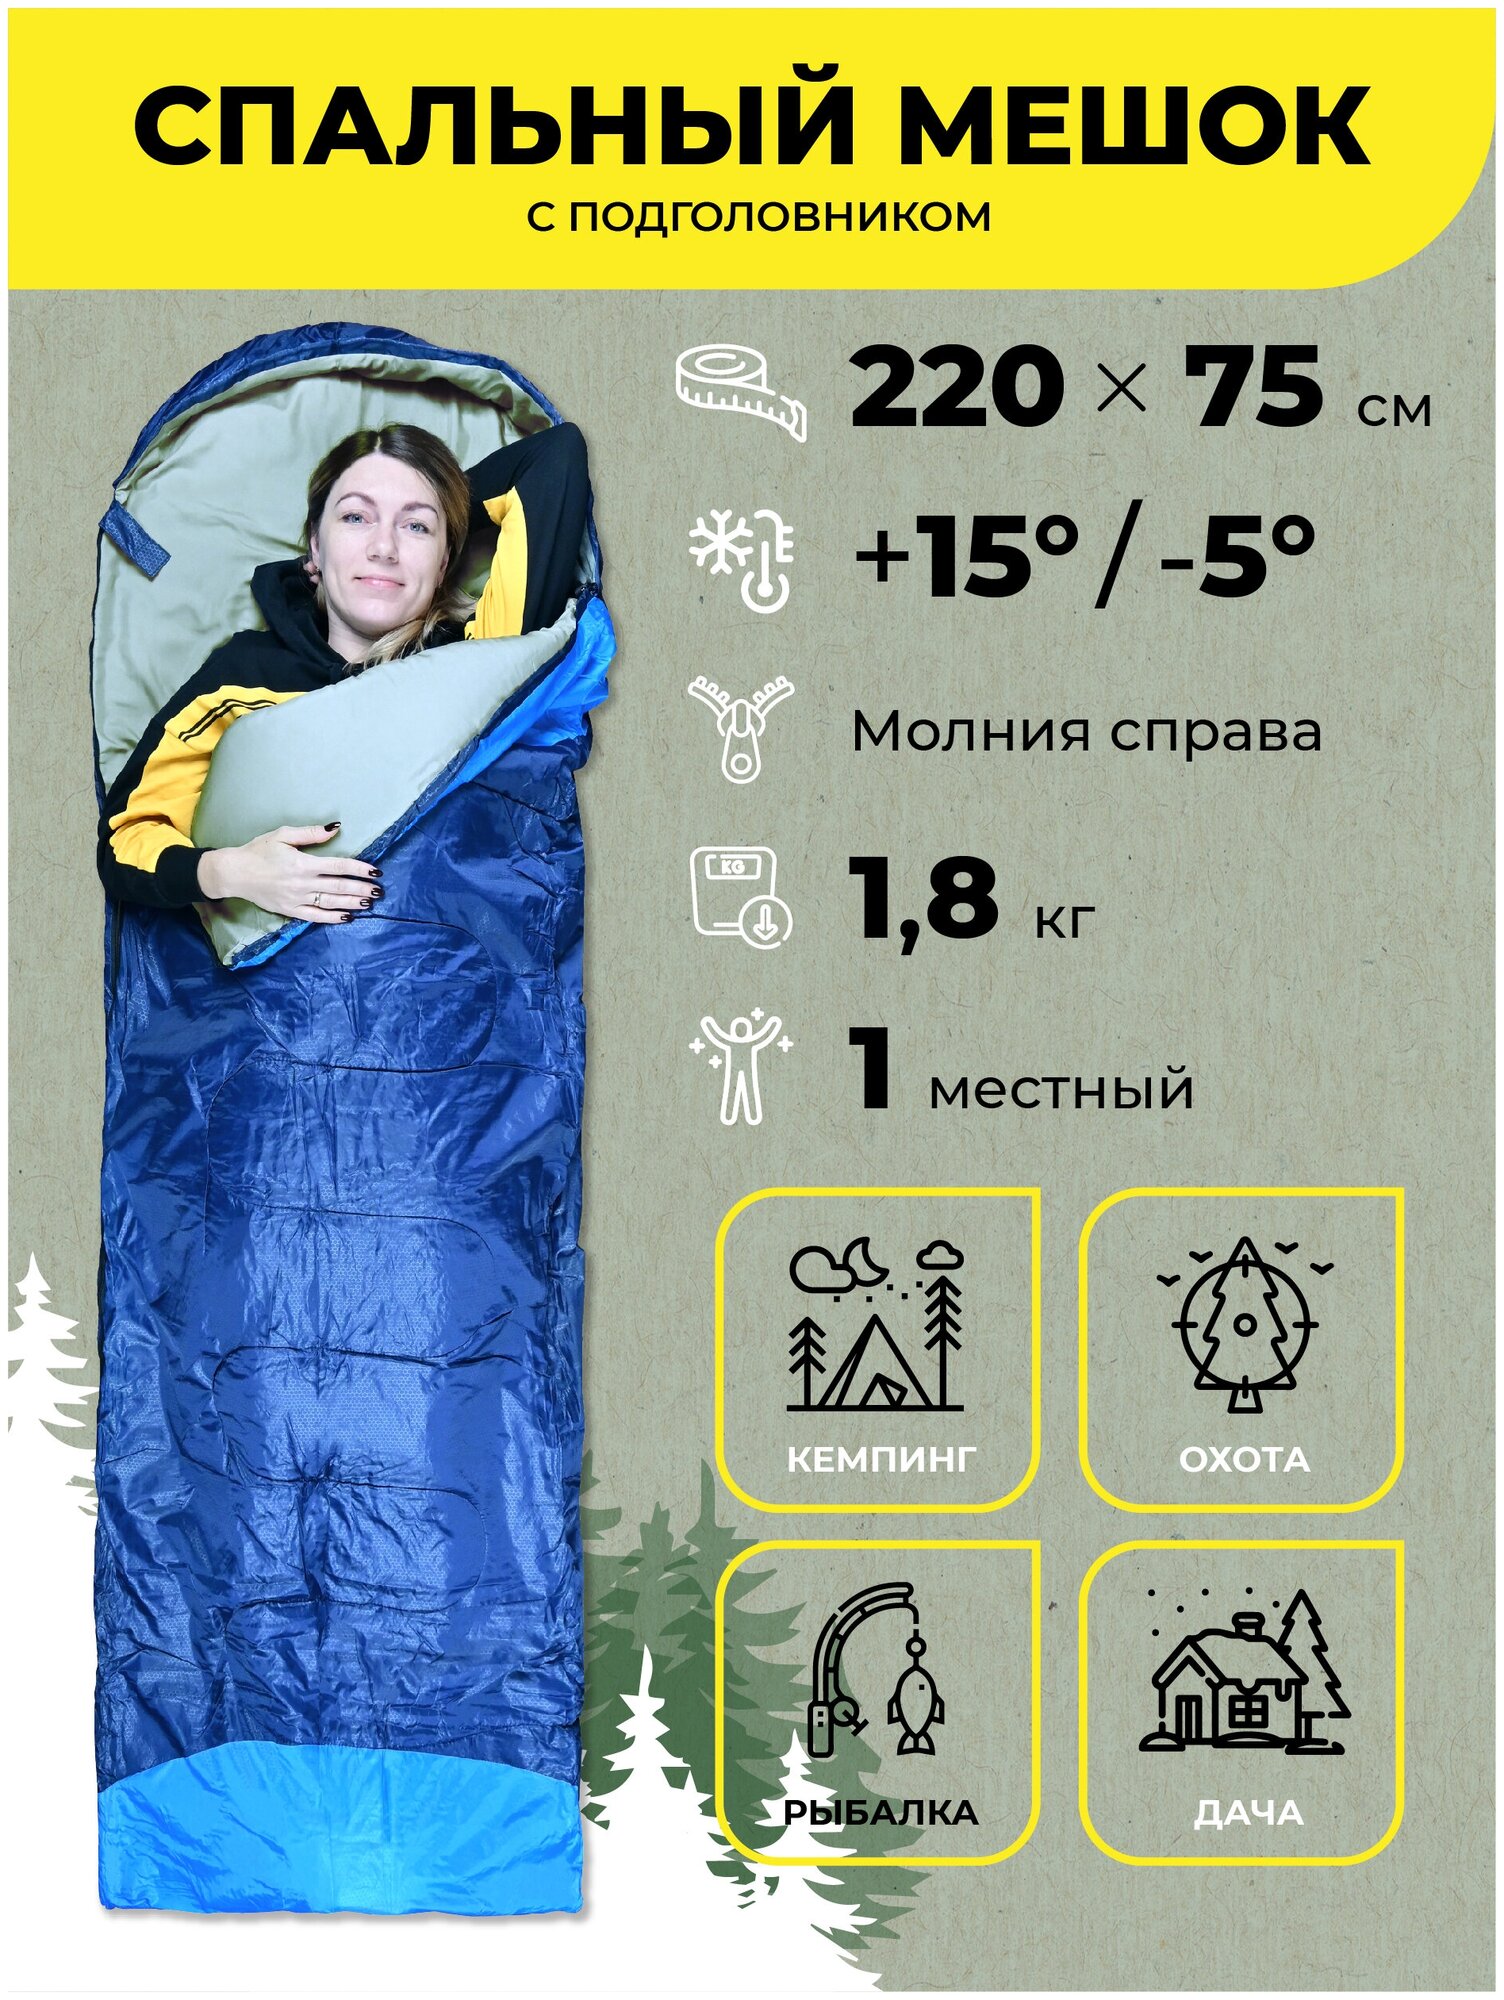 Водонепроницаемый спальный мешок демисезонный AT6101 (правый) 18 кг 190х75 см с подголовником 30 см синий / Одинарный спальник туристический